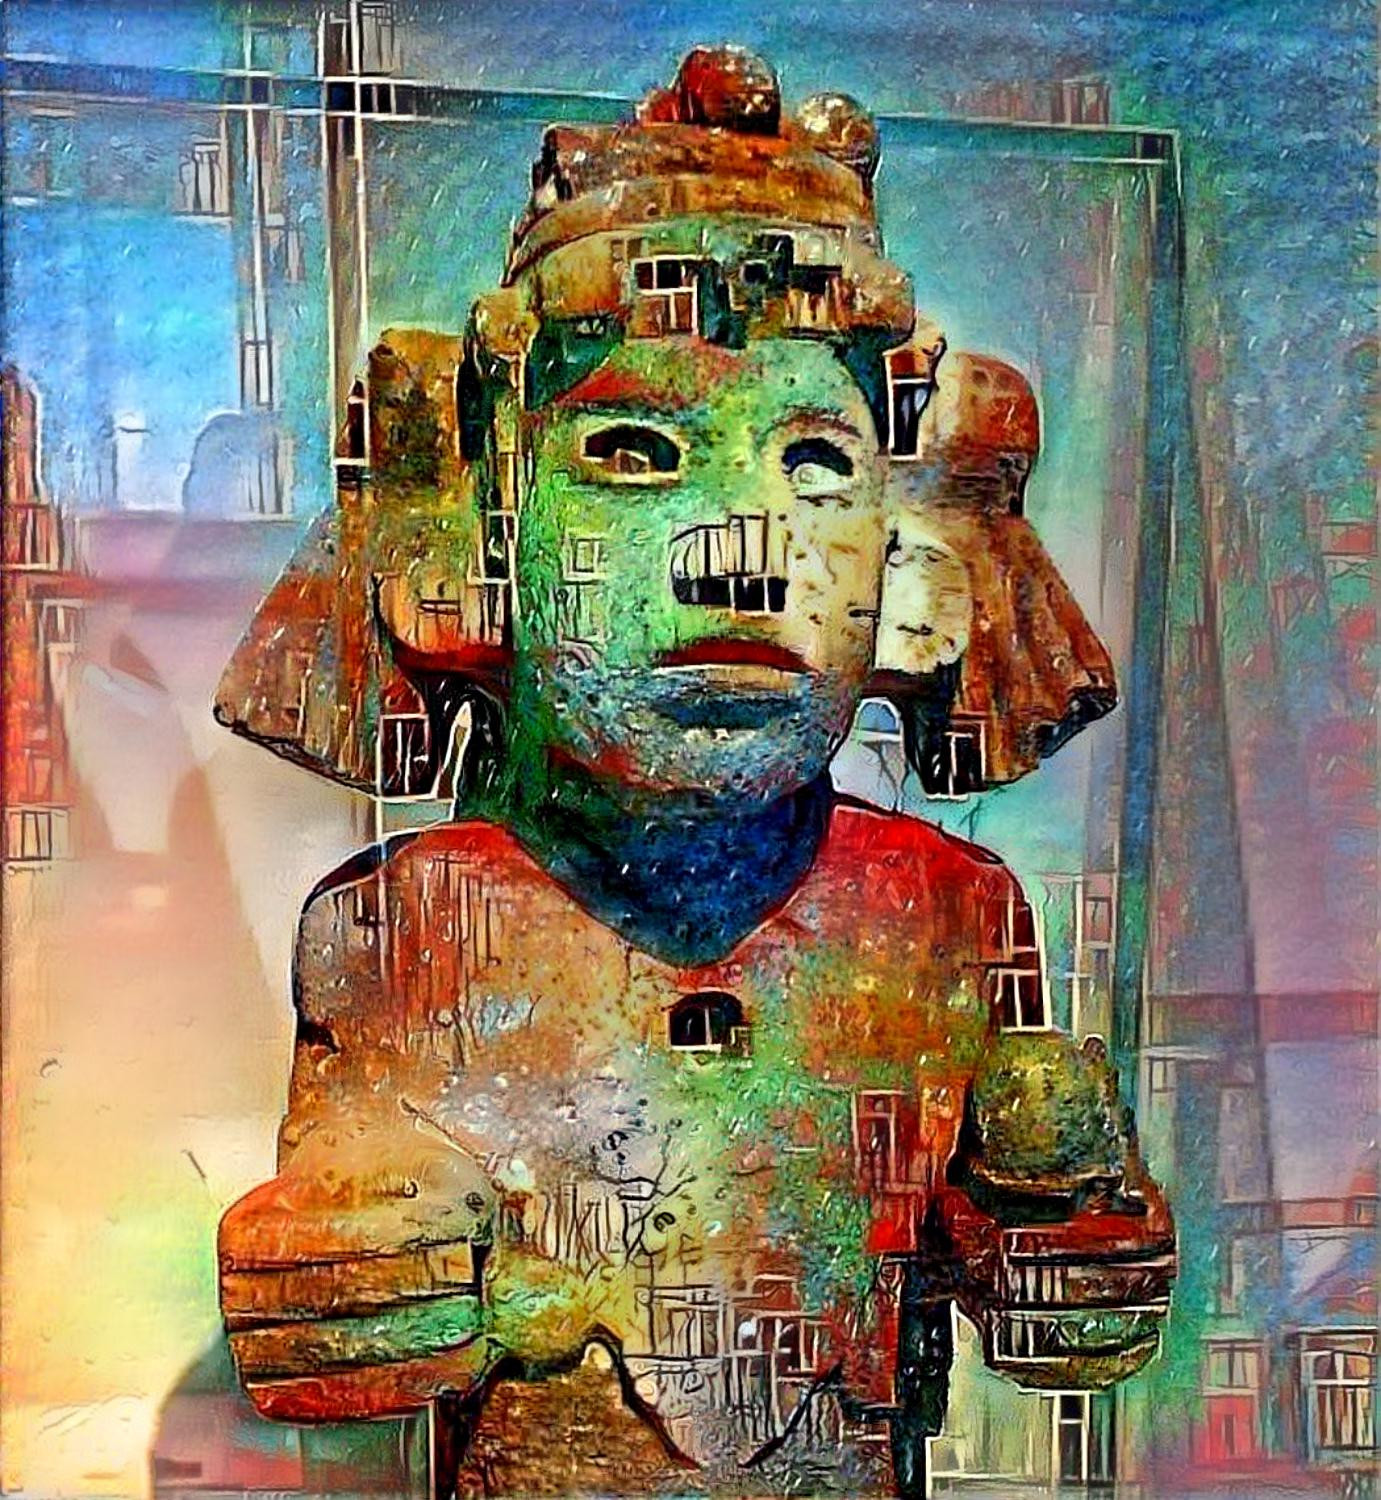 Mesoamerican statue